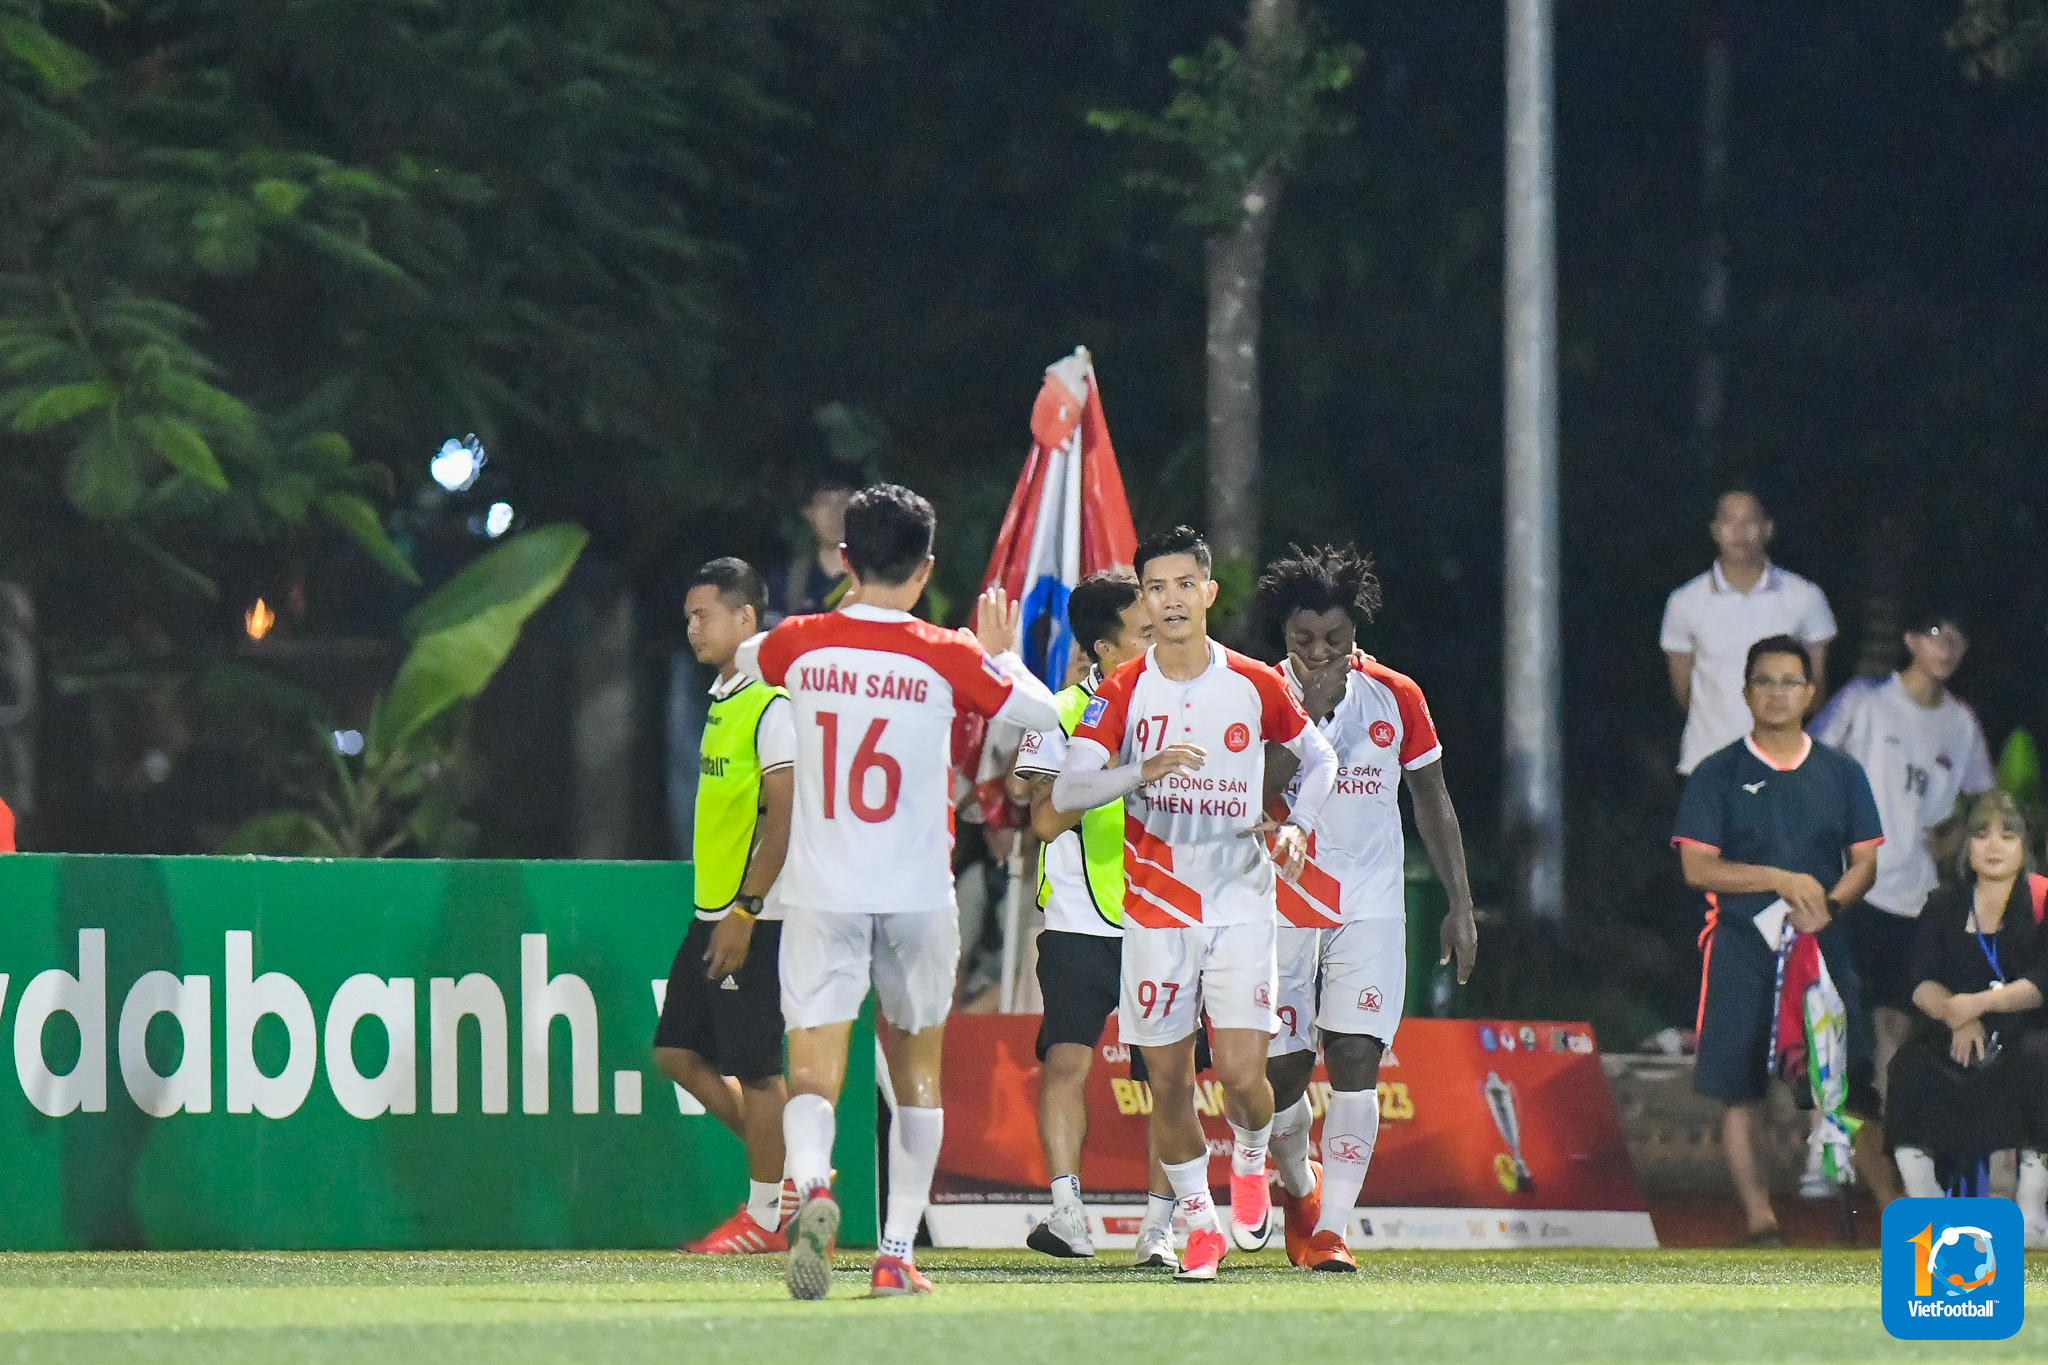 HLV Thắng “Xavi”: “Thiên Khôi FC dám chơi, dám chấp nhận”